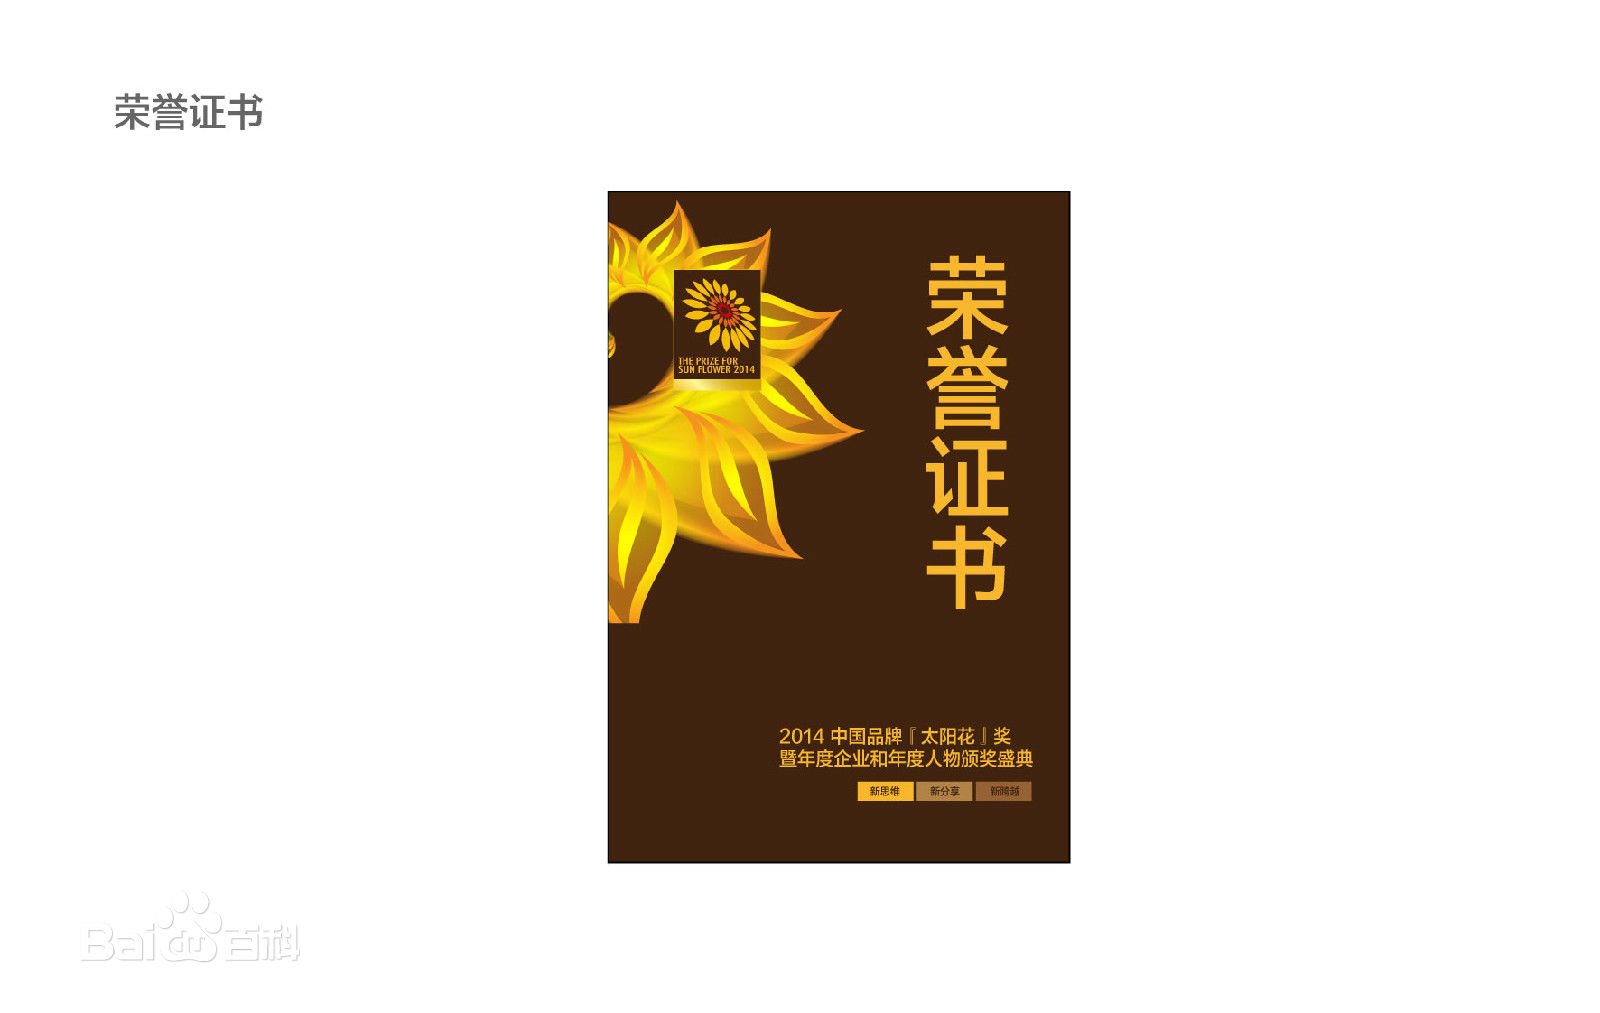 天威泛凌贸易有限公司荣获2014年度“太阳花”最佳品牌影响力奖